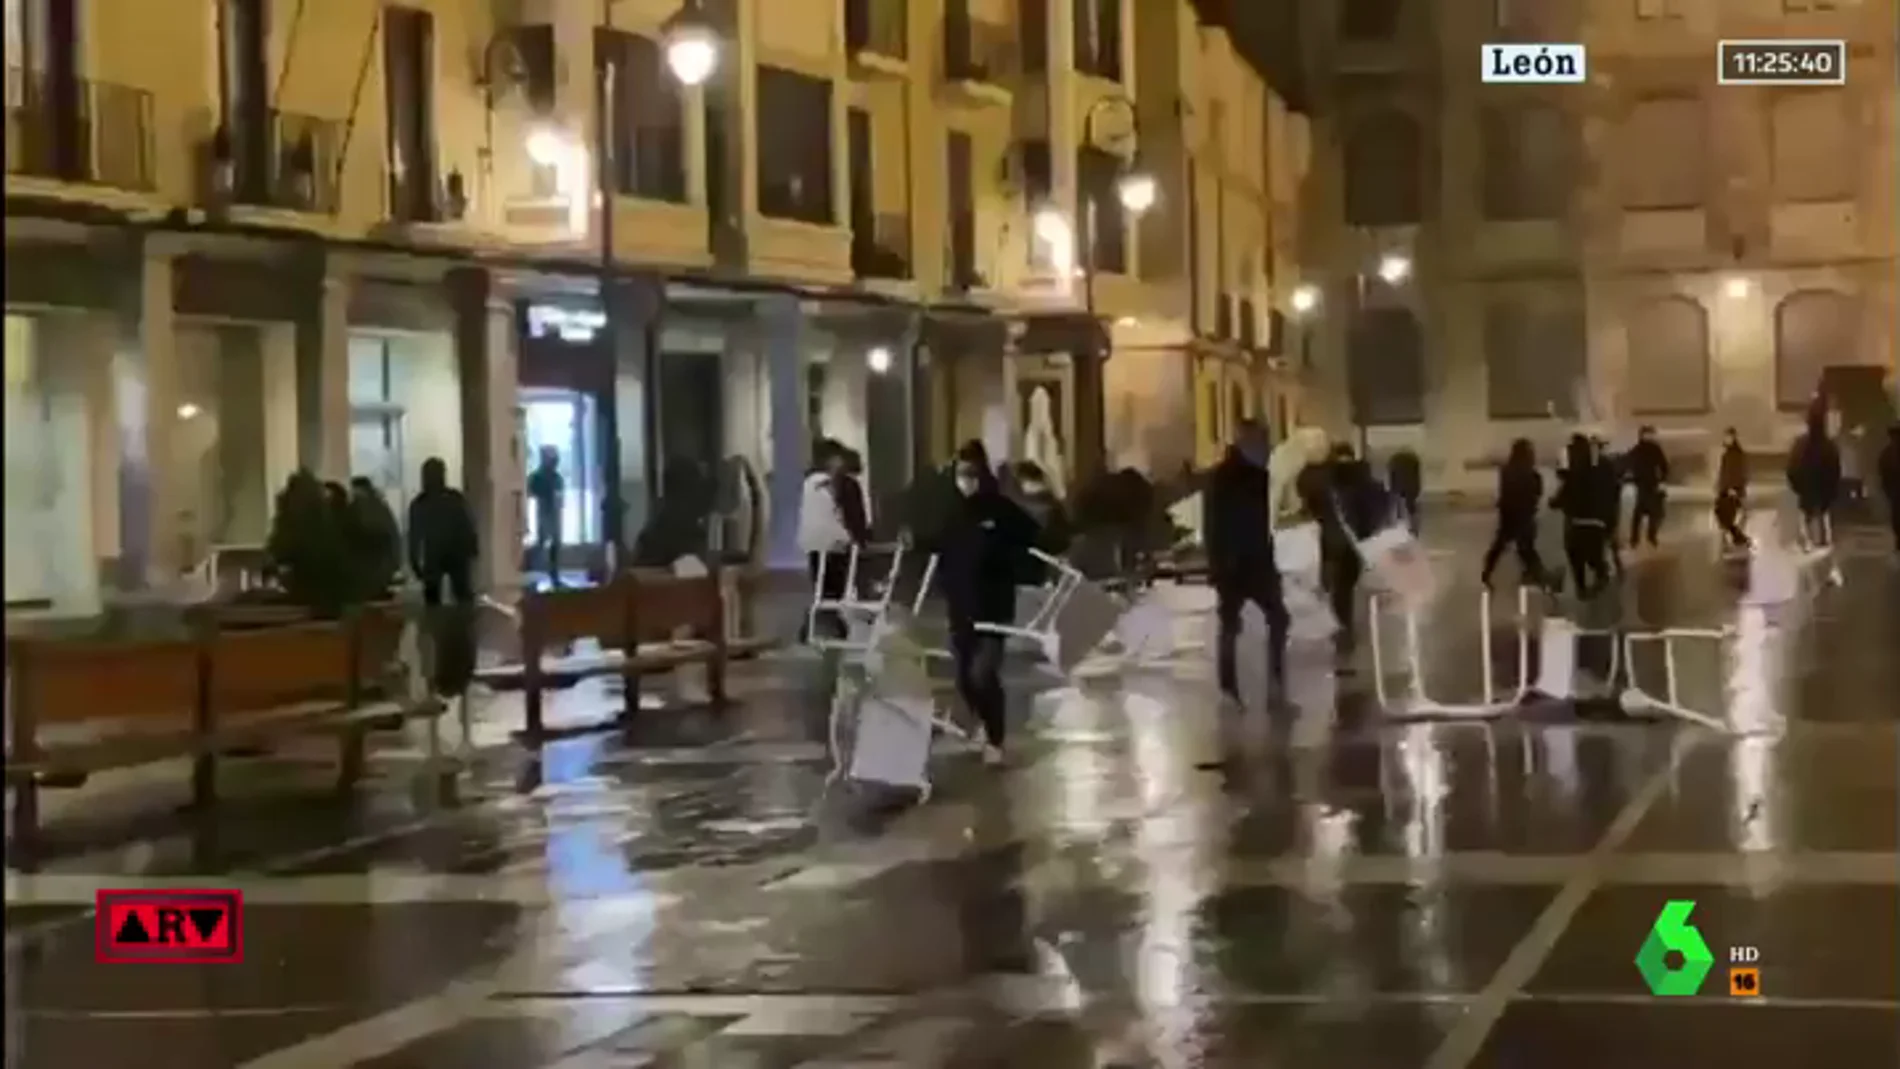  Cinco detenidos y múltiples daños materiales en la tercera noche de disturbios por las restricciones ante el COVID-19